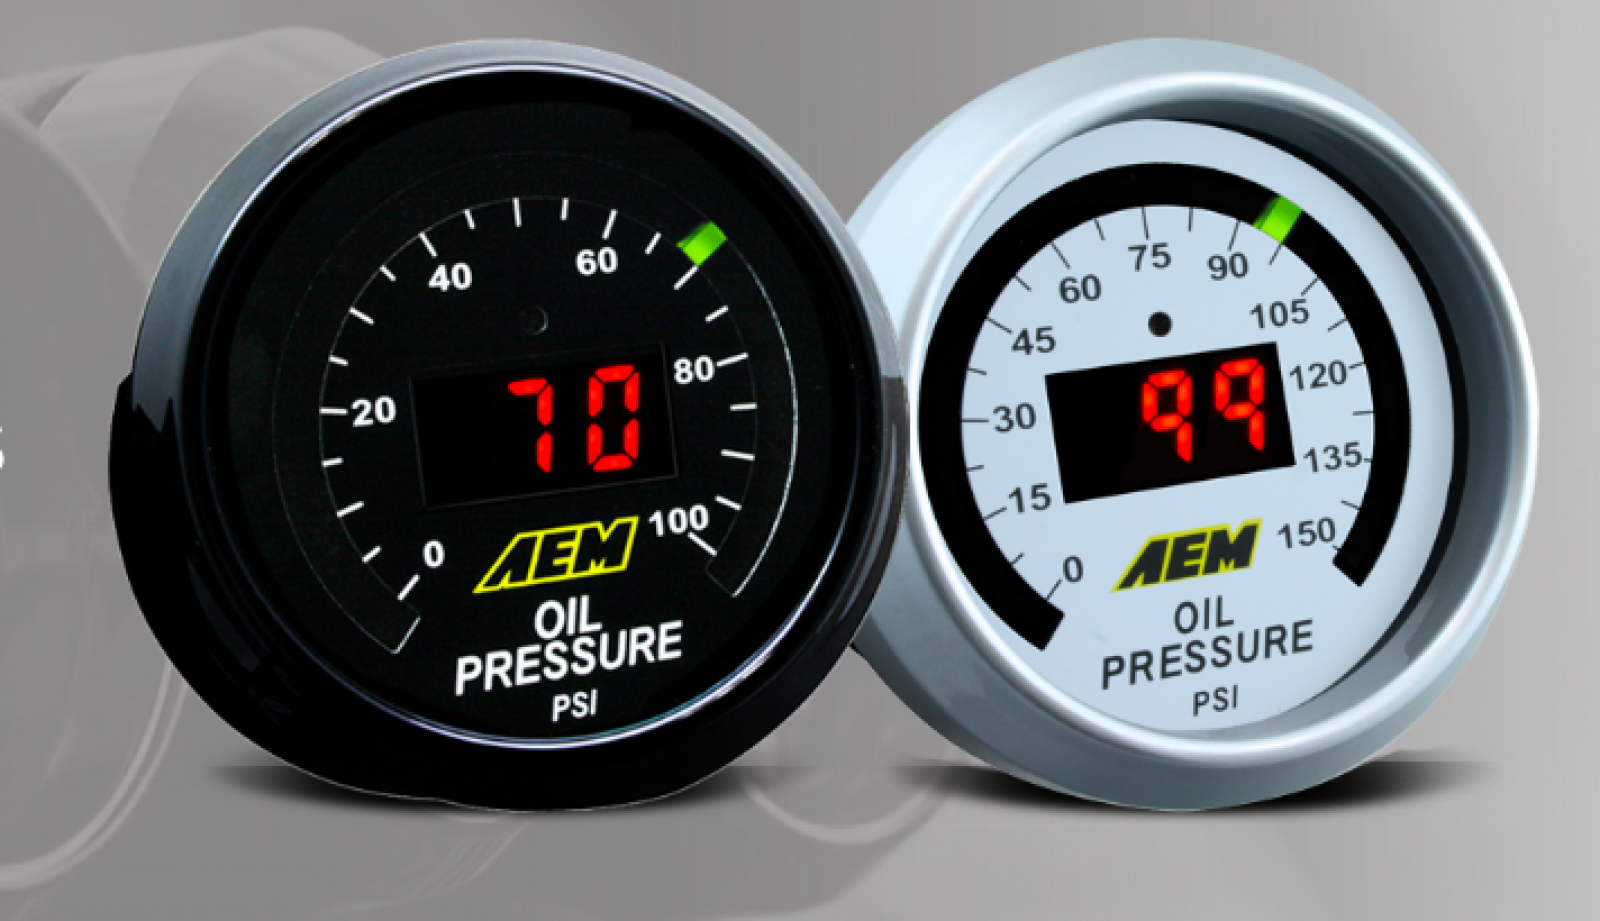 AEM 0-150 PSI Oil/Fuel Pressure Gauge